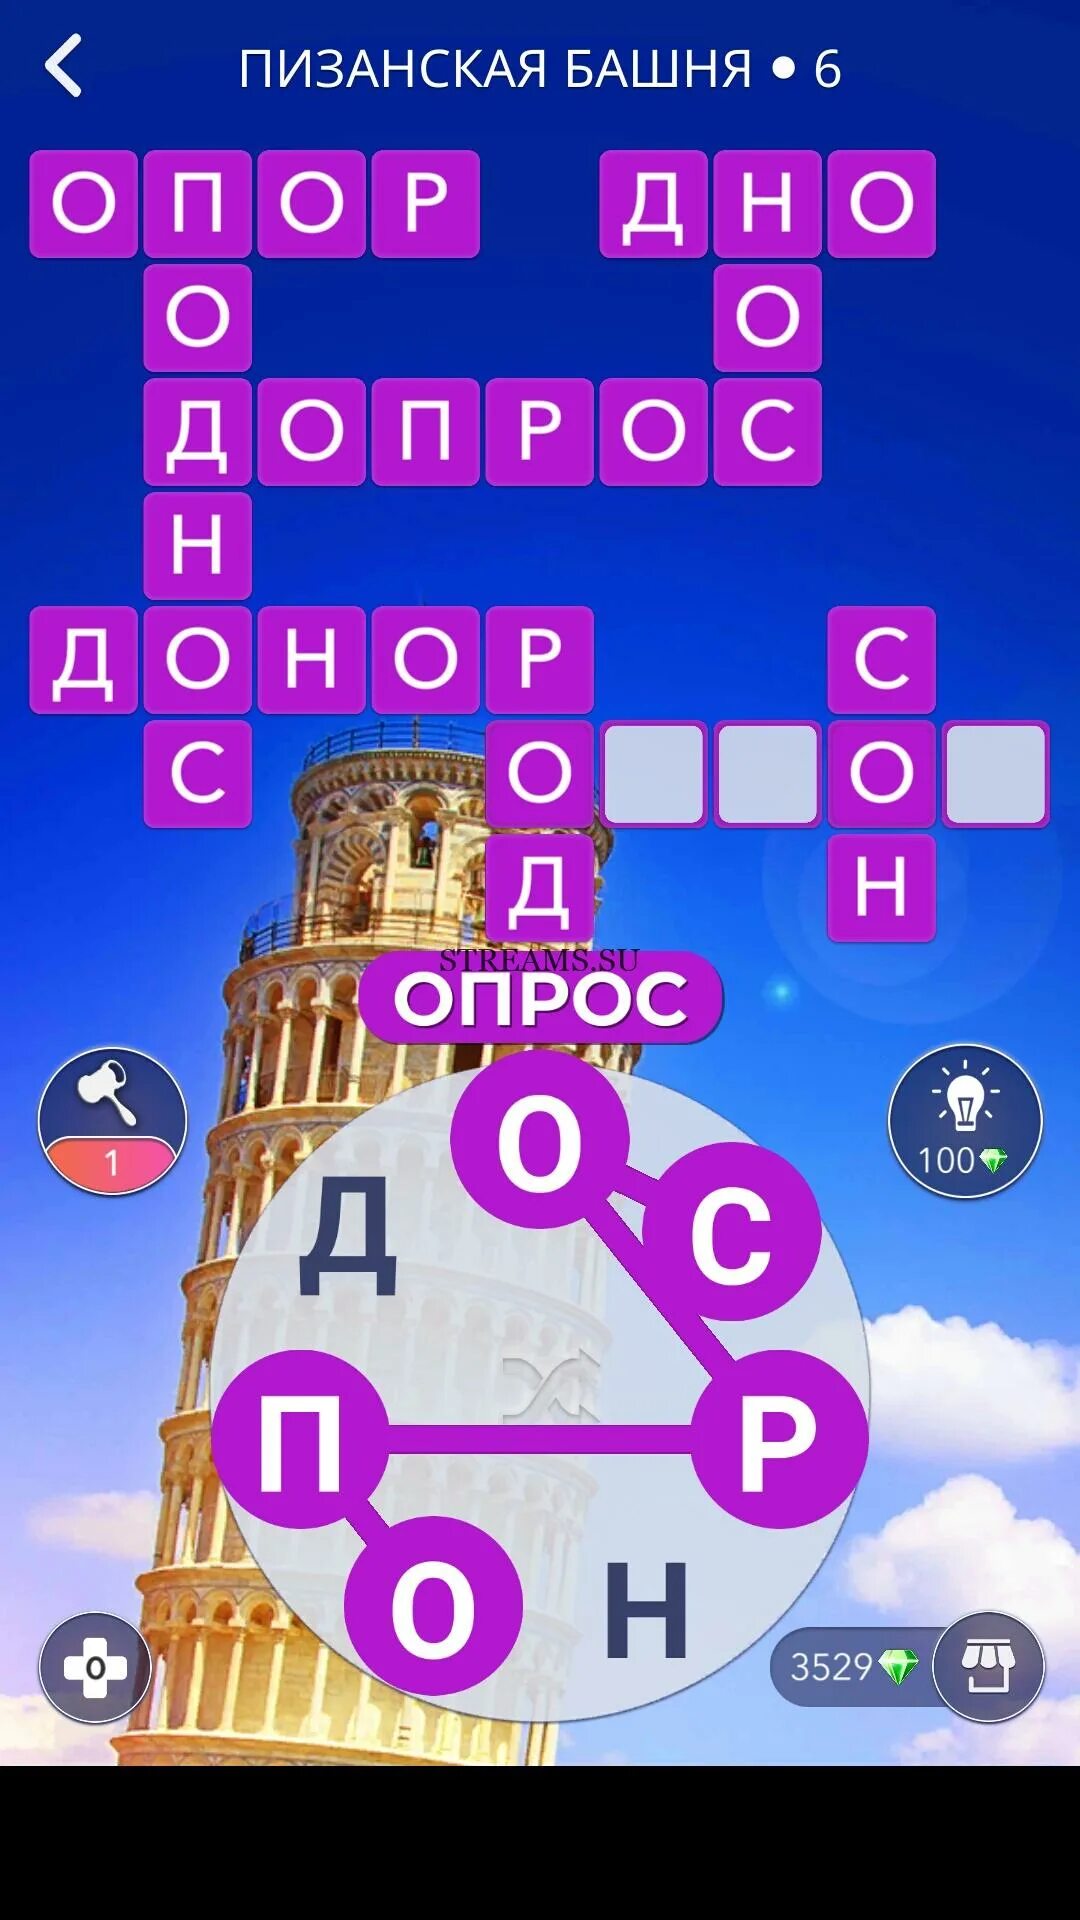 Игра башня бонусный уровень ответы. Игра башня слов. Игра башня слов ответы. Пизанская башня игра. Башня бонусный уровень ответы.